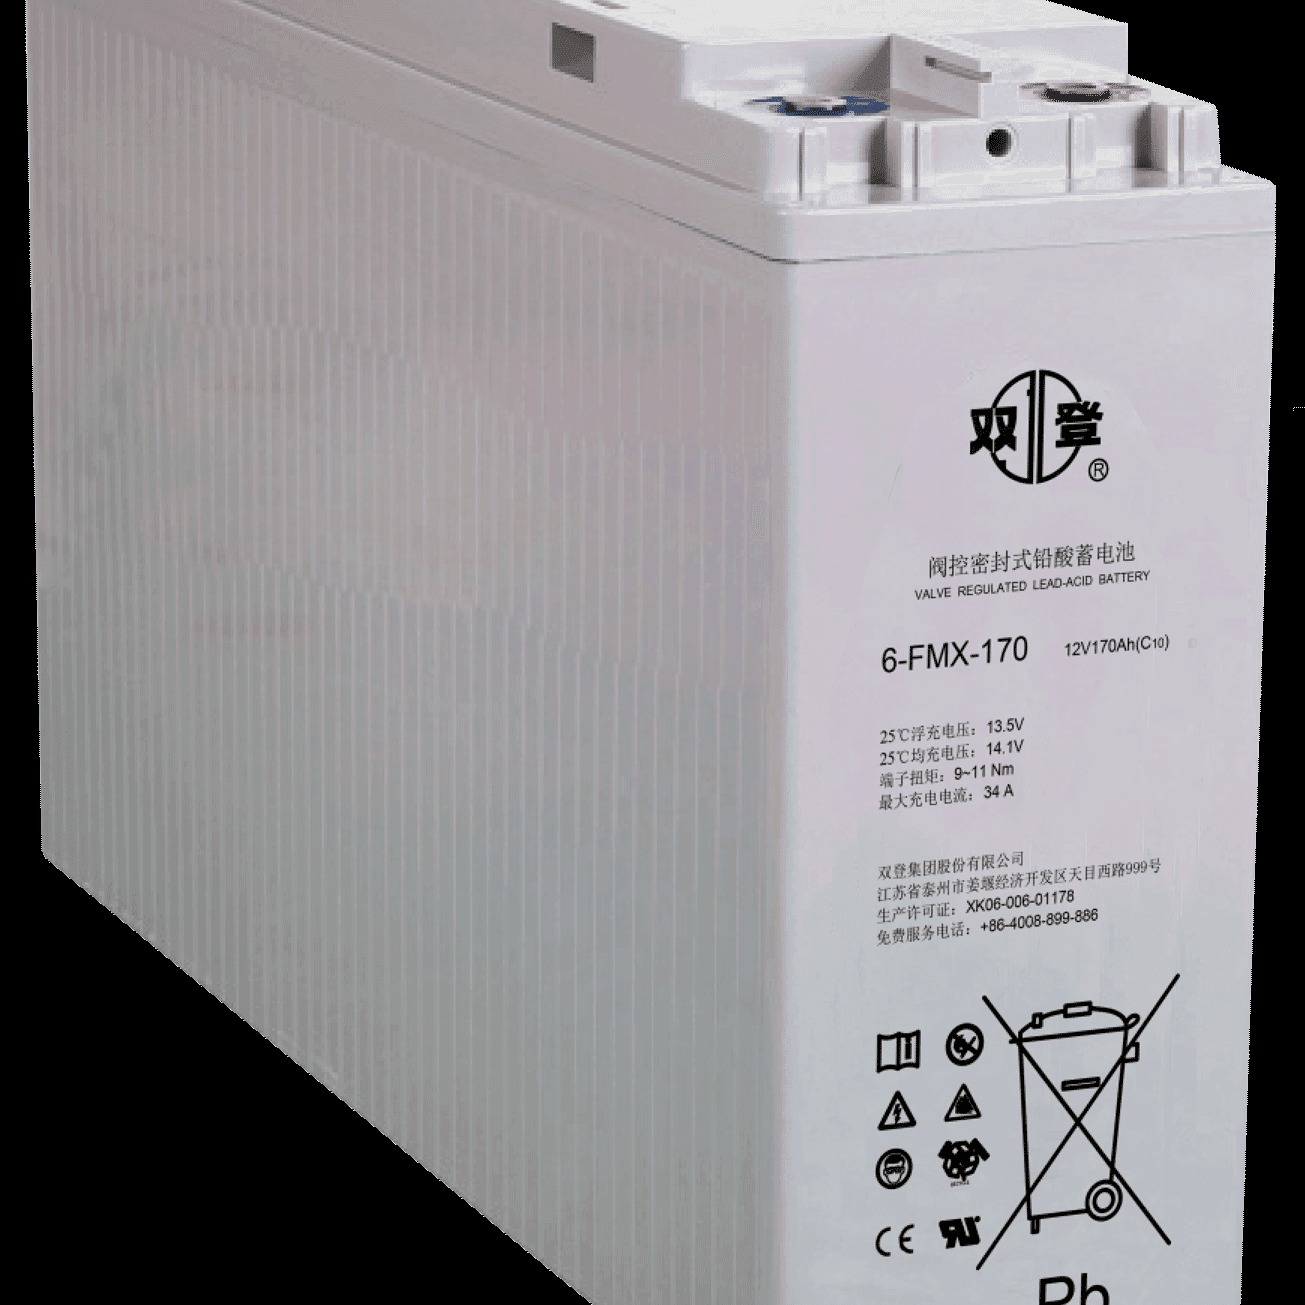 双登蓄电池6-FMX-170 狭长型前置端子蓄电池12V170AH 发电厂变电站控制系统专用 现货直销